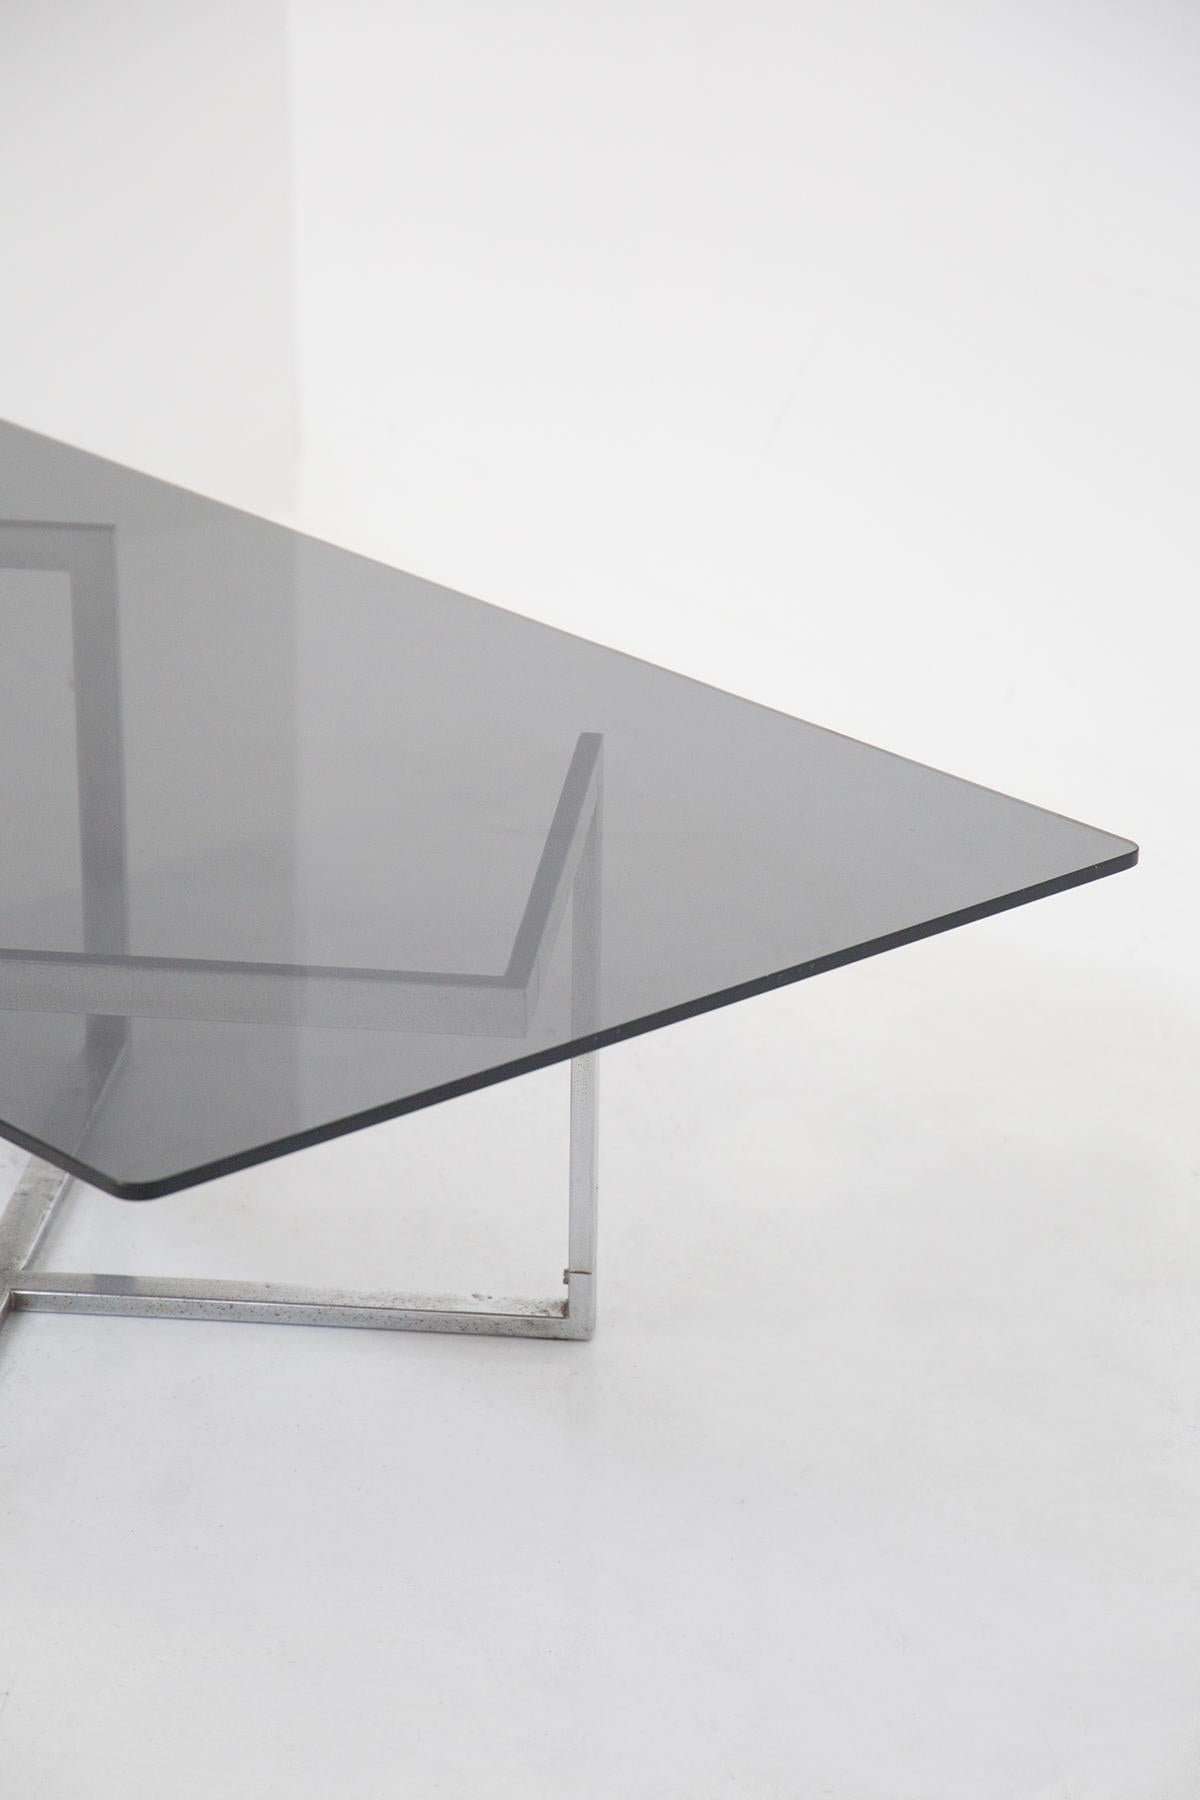 Wunderschöner Rauchtisch aus Glas und Stahl, entworfen von Vittorio Introini in den 70er Jahren, aus Vip's Residence.
Der Tisch hat eine rechteckige Form mit harten, klassischen Linien.
Die Platte ist aus Rauchglas sehr elegant auf den Ton von